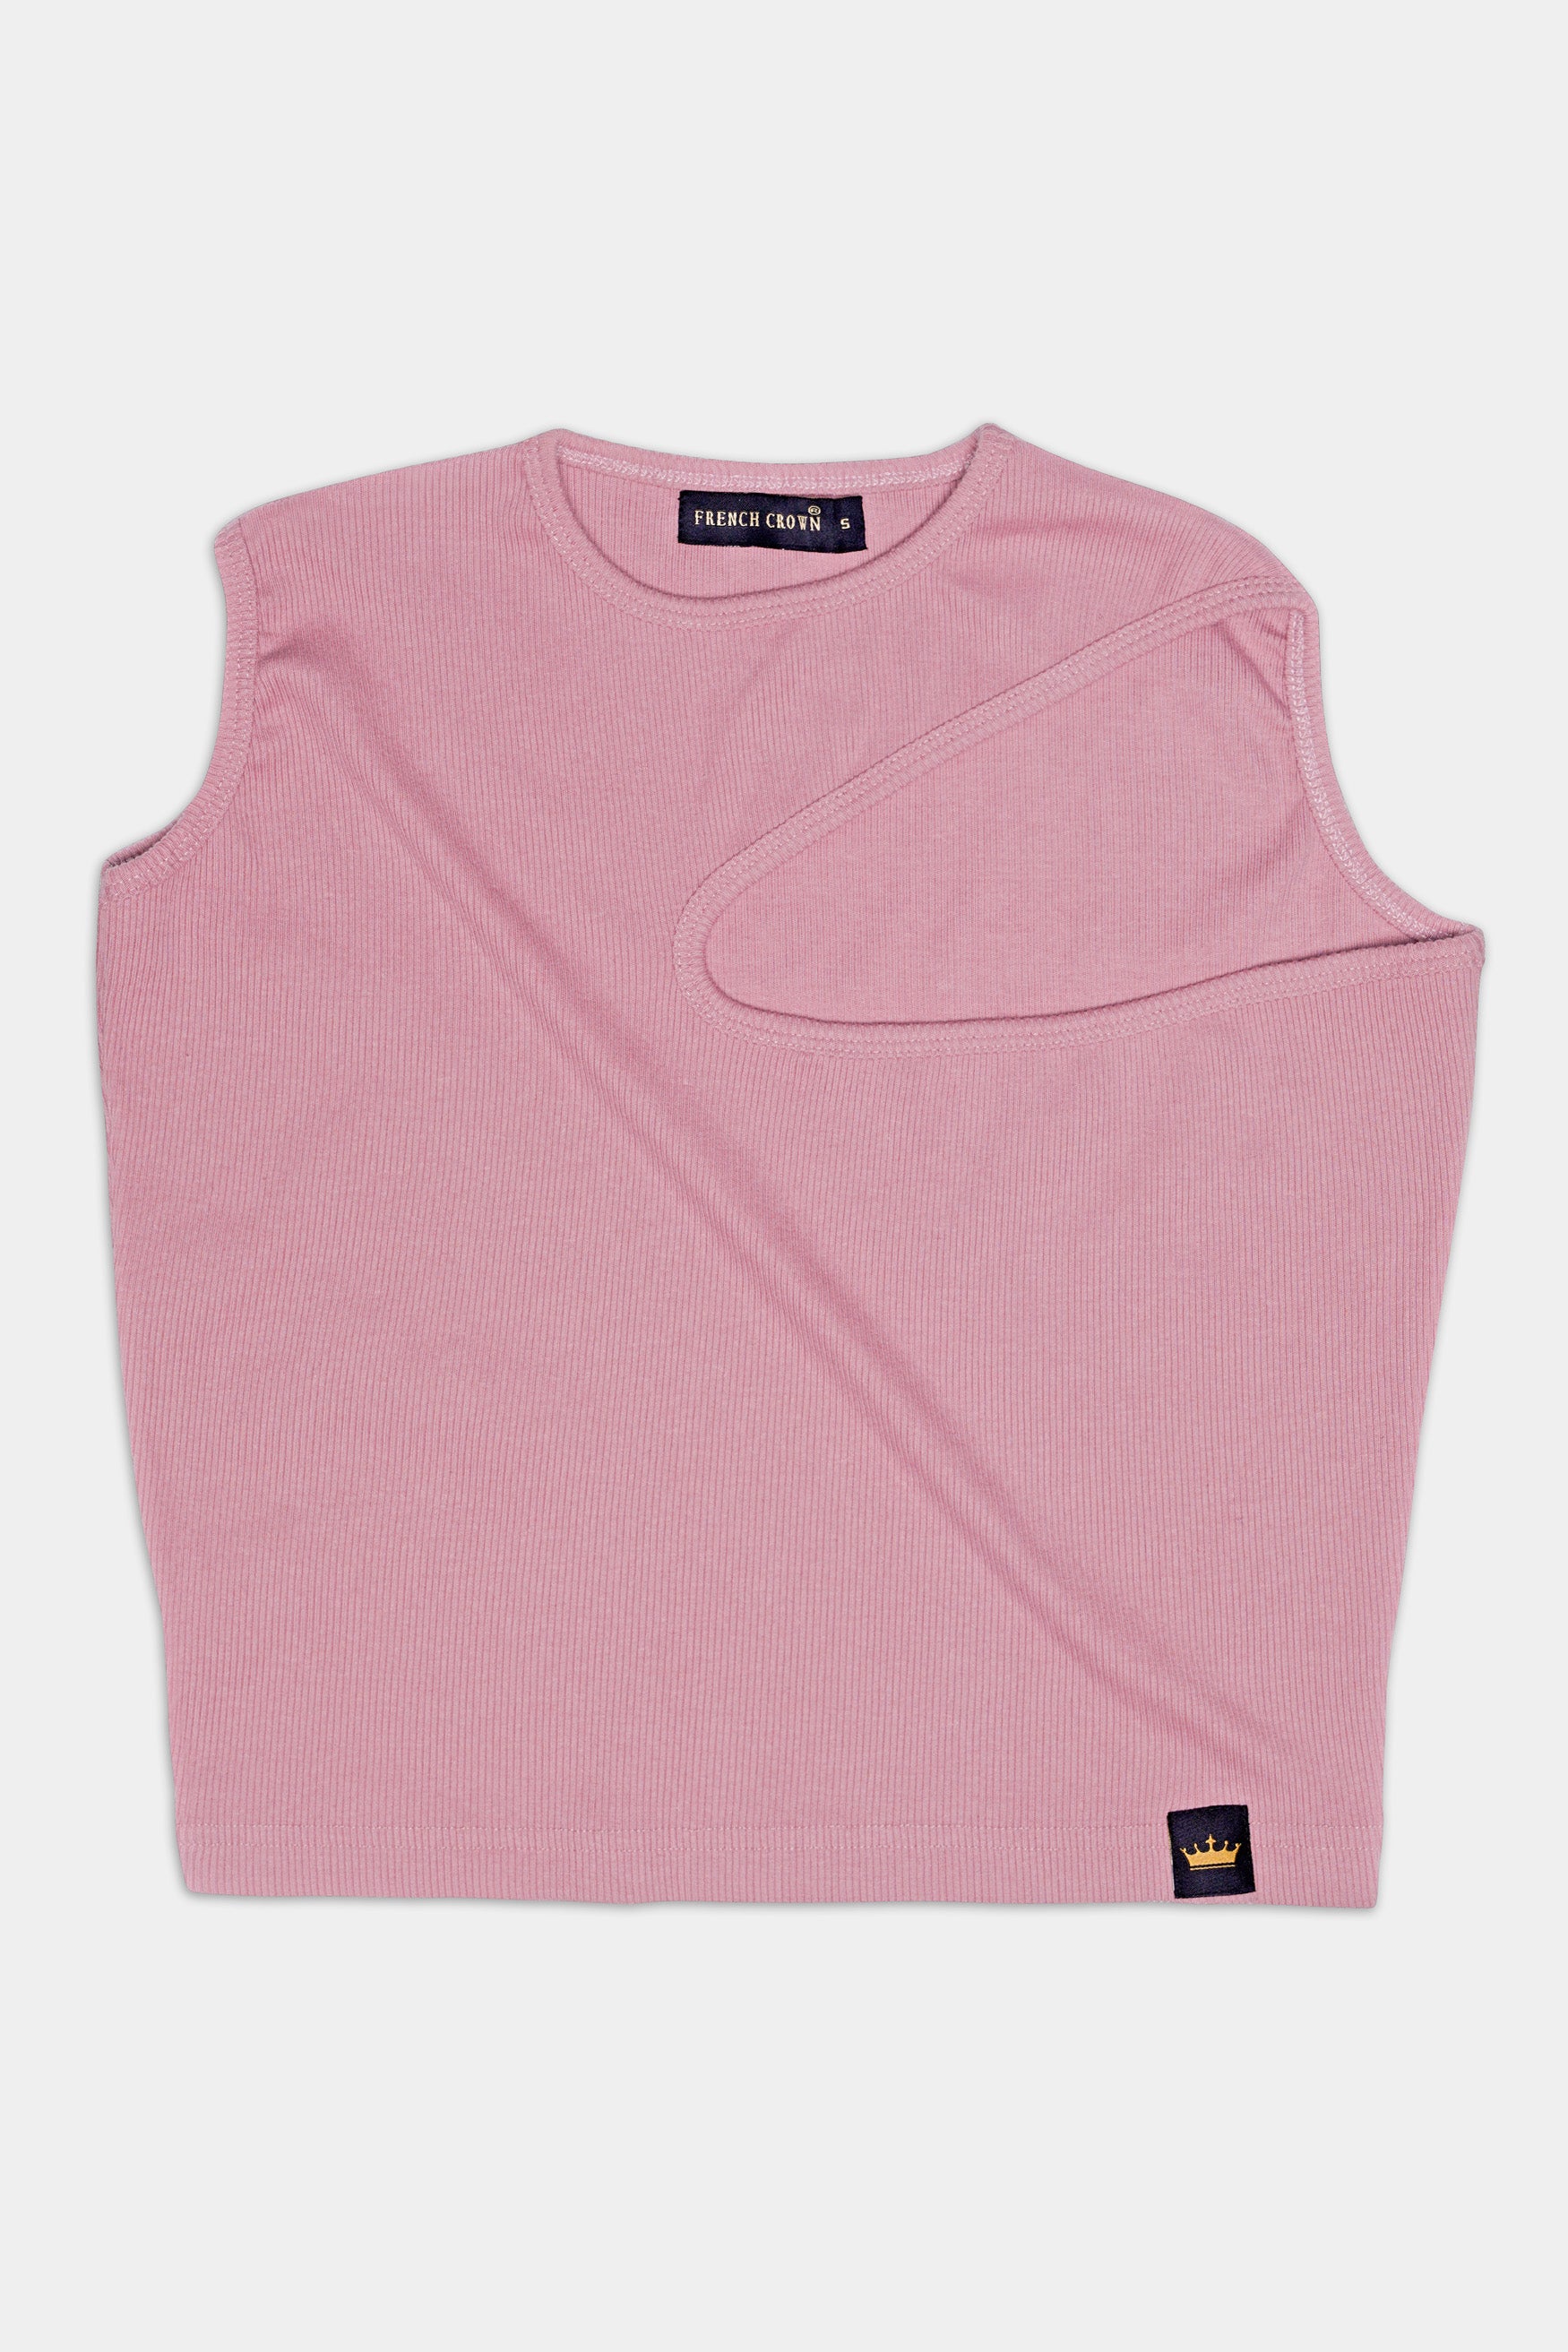 Mauve Pink Premium Cotton Knit Stretchable Crop Top